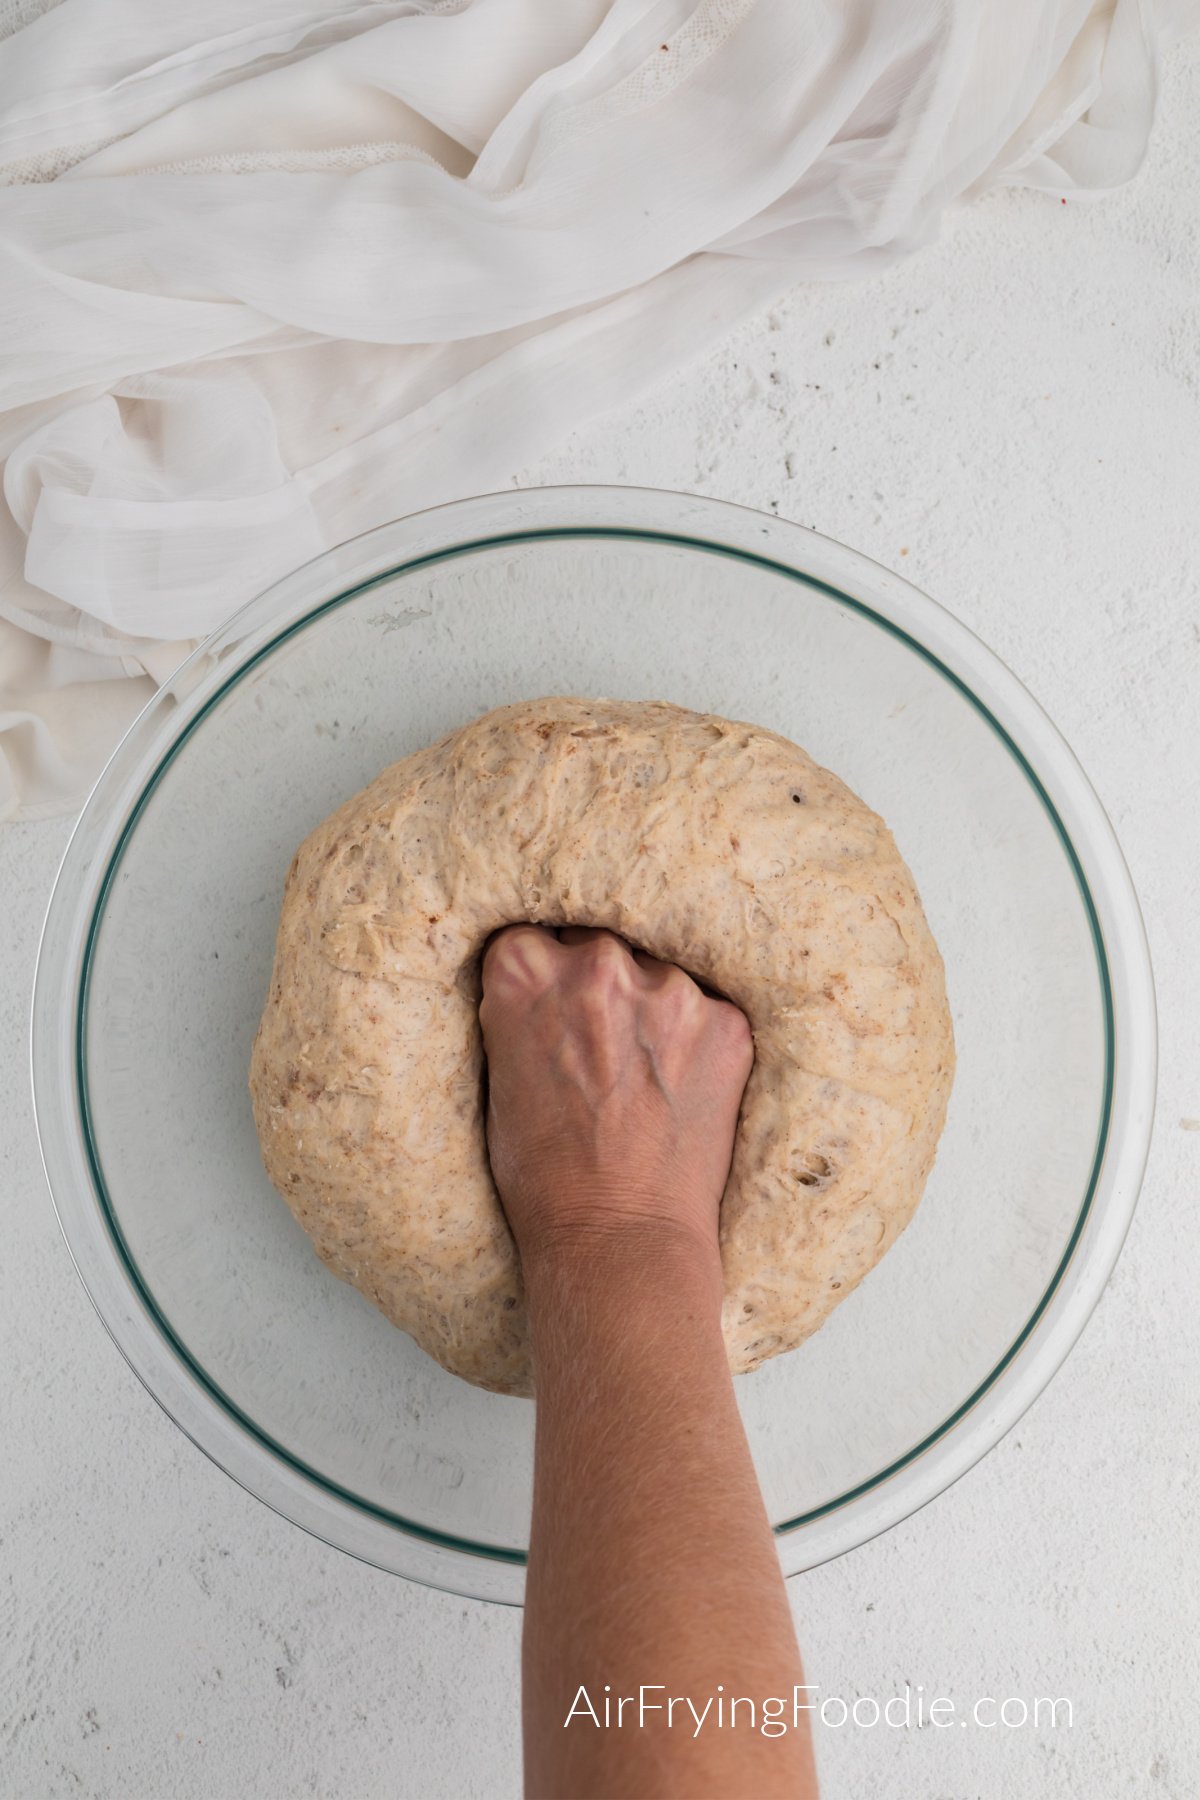 pinching down the dough to make pretzel bites.